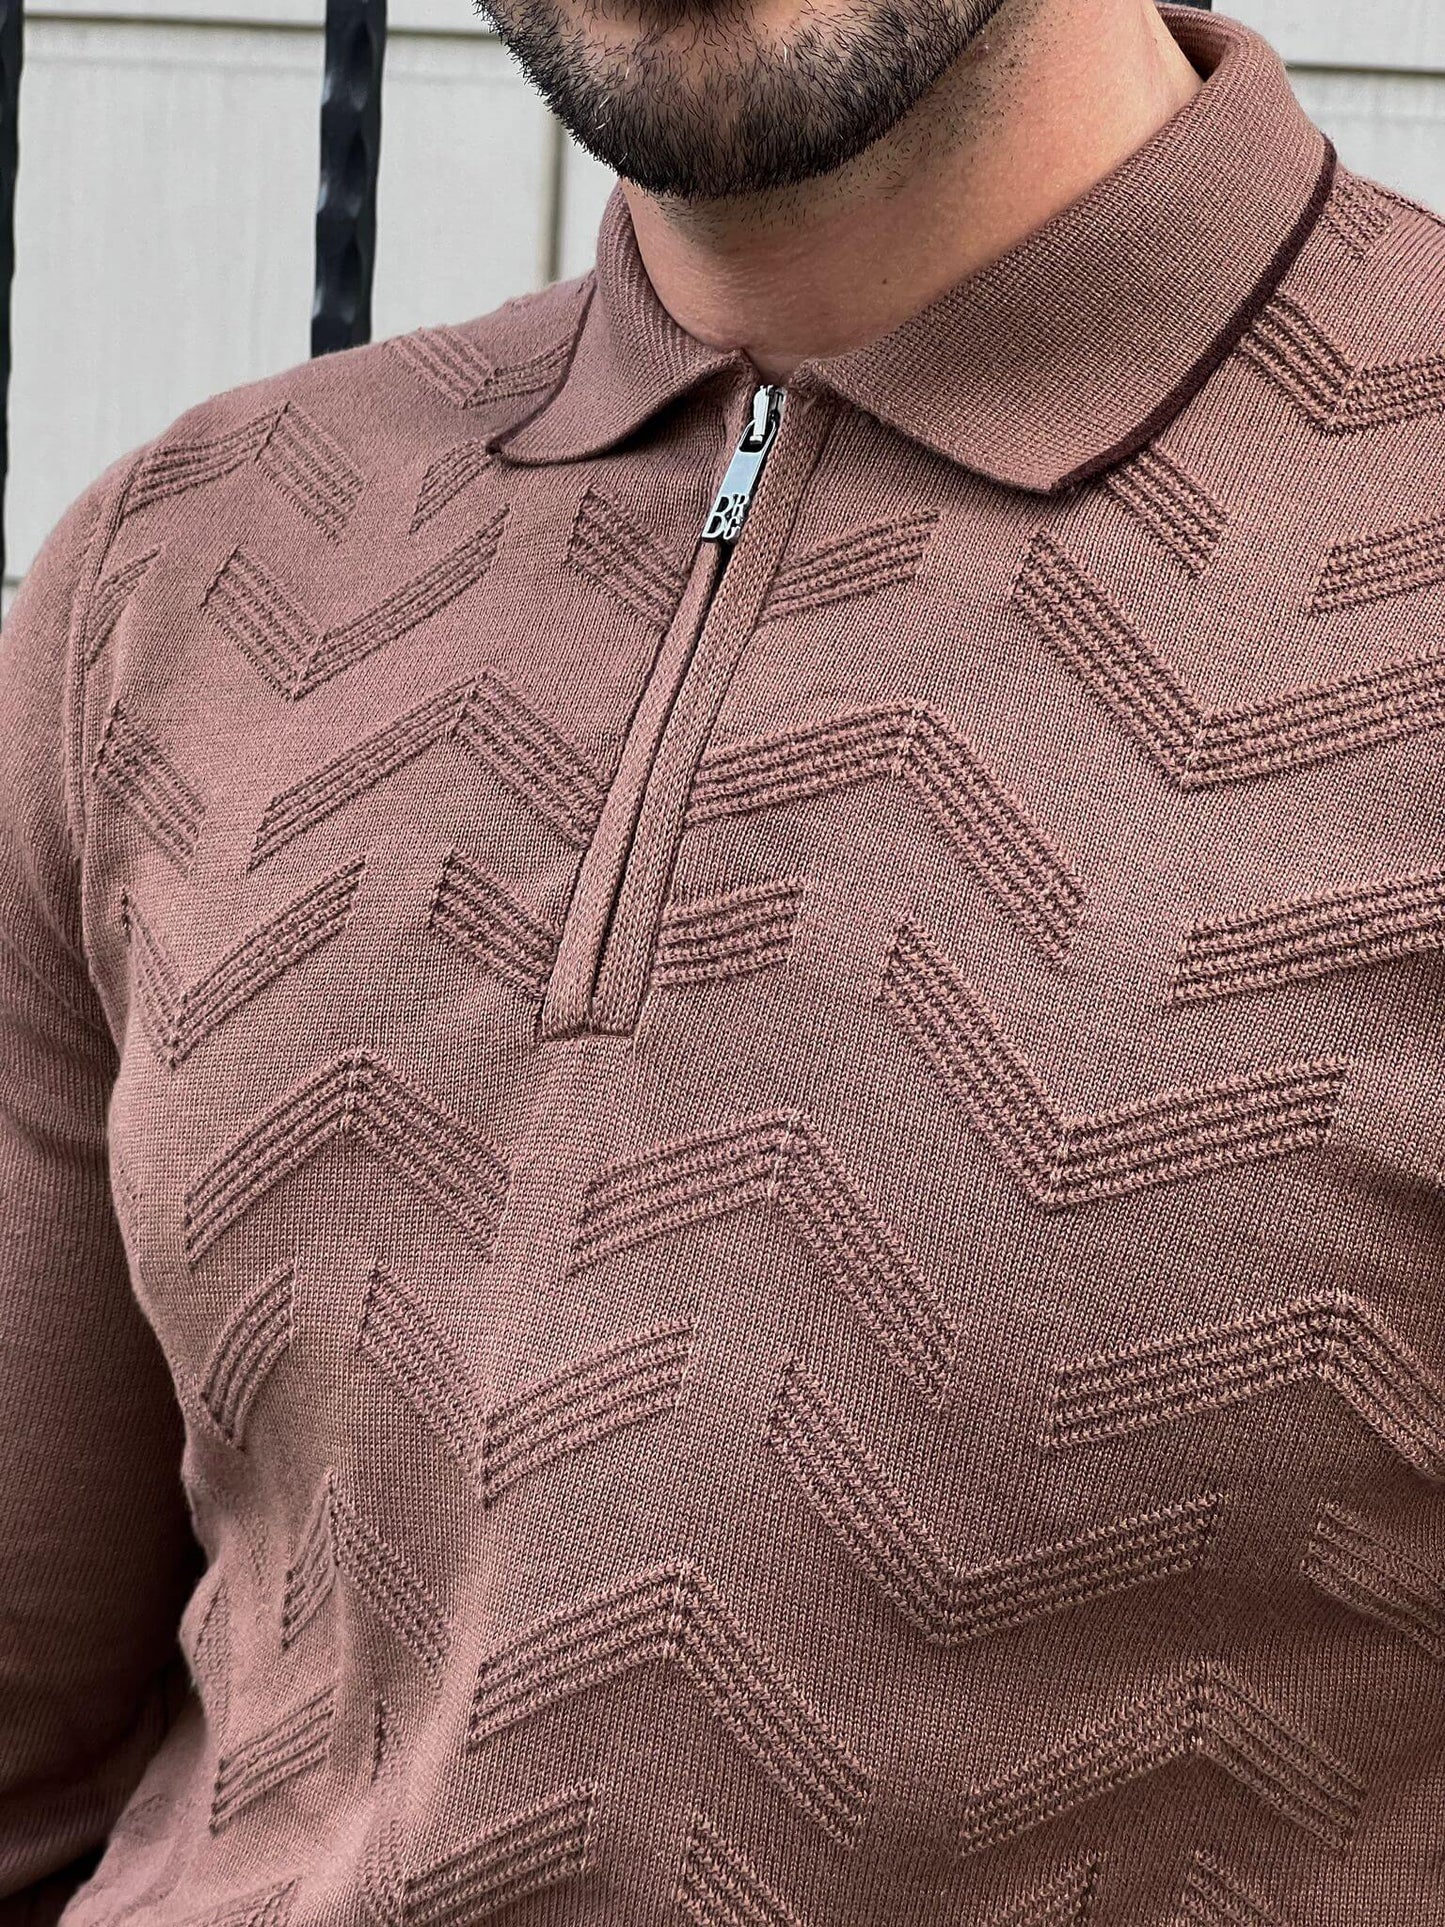  A stylish Zipper Neck Mink Sweater, featuring a sleek zipper detail on the neckline.